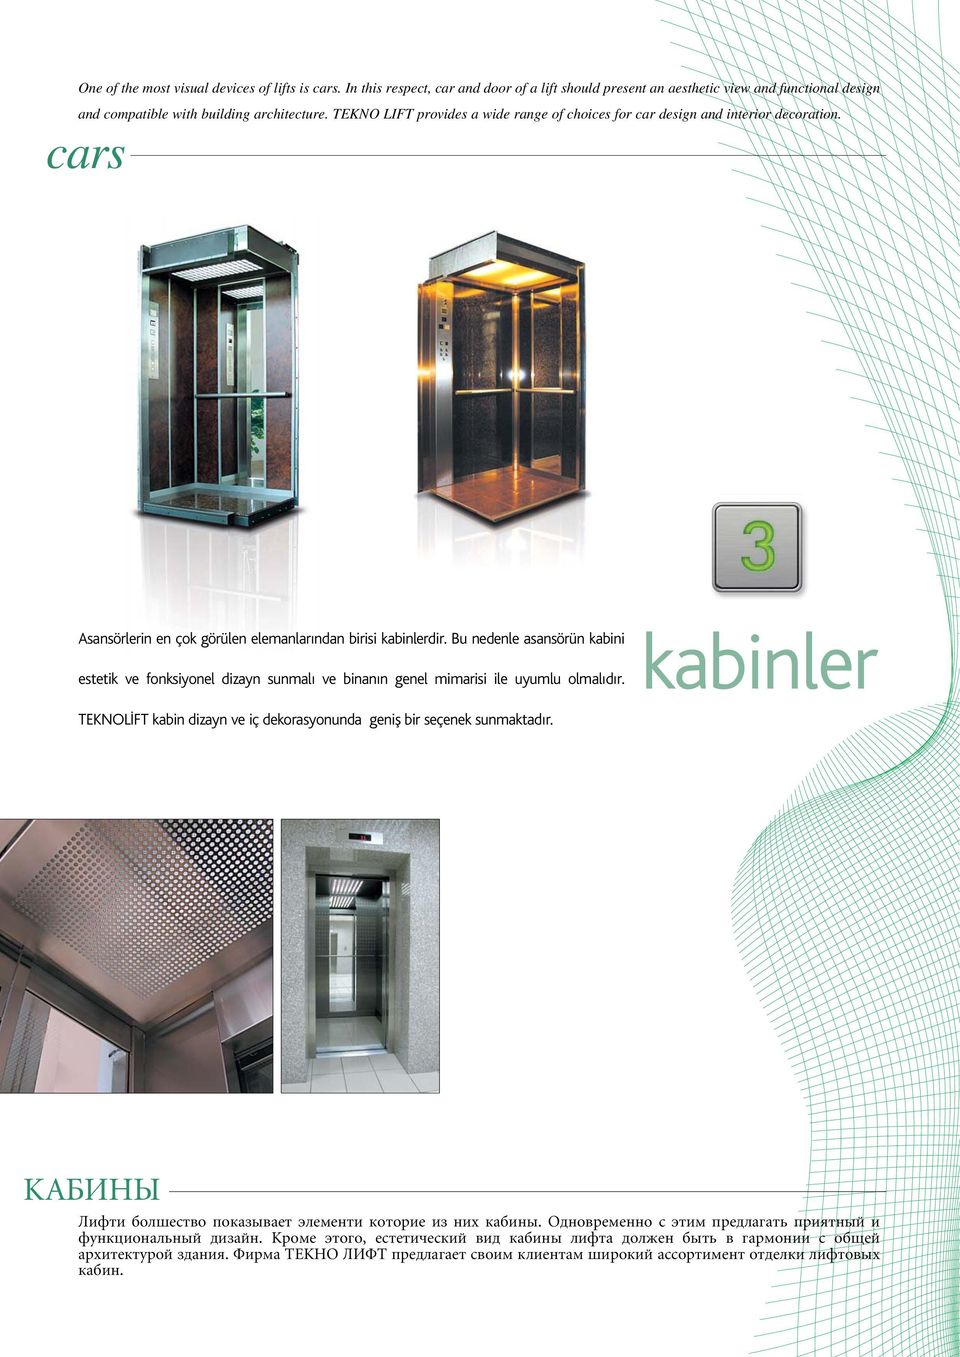 Bu nedenle asansörün kabini estetik ve fonksiyonel dizayn sunmalı ve binanın genel mimarisi ile uyumlu olmalıdır. kabinler TEKNOL FT kabin dizayn ve iç dekorasyonunda genifl bir seçenek sunmaktadır.